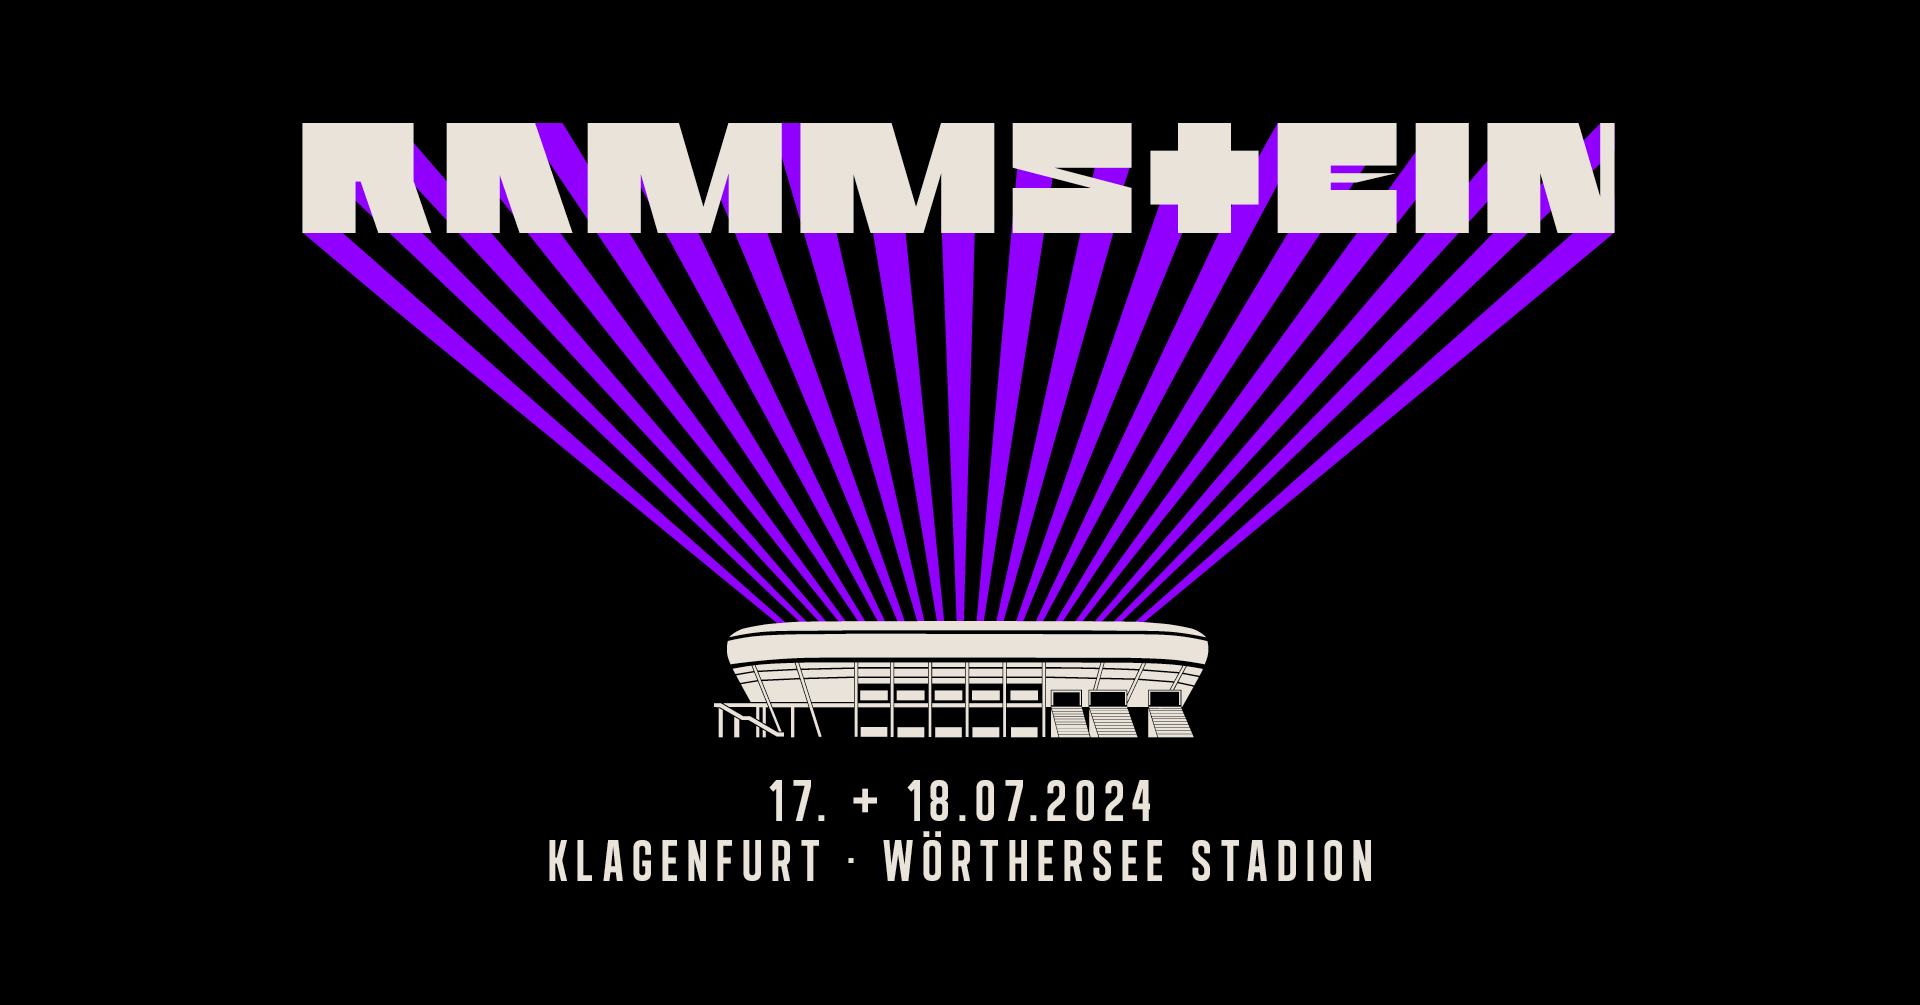 Rammstein am 17. July 2024 @ Wörthersee Stadion.